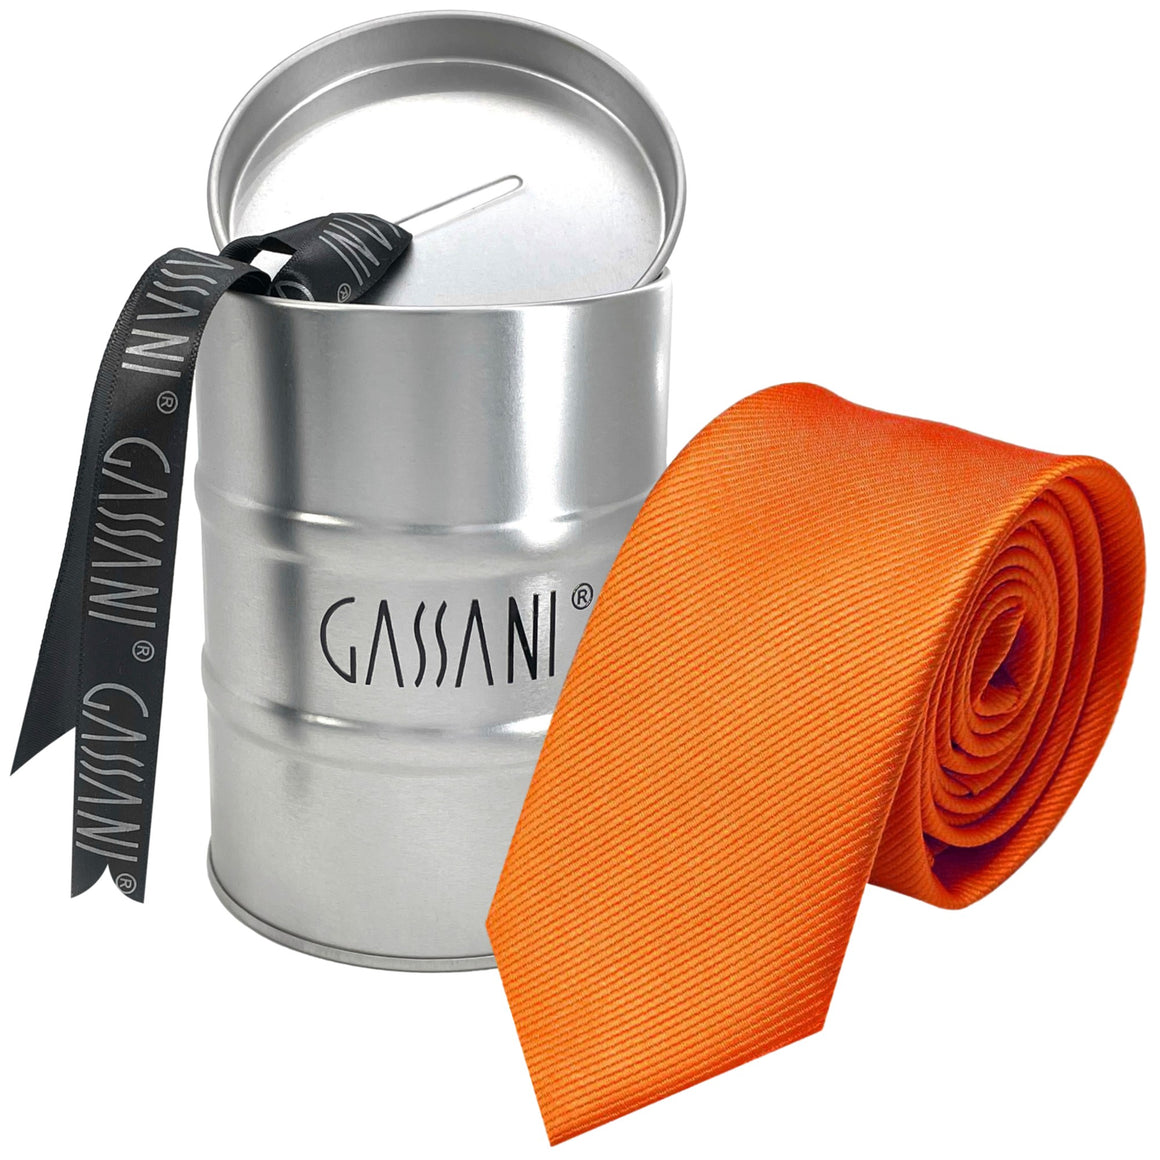 GASSANI Raccoglitore per cravatte da uomo a righe arancioni strette da 8 cm Uni Rips in confezione regalo Salvadanaio in latta